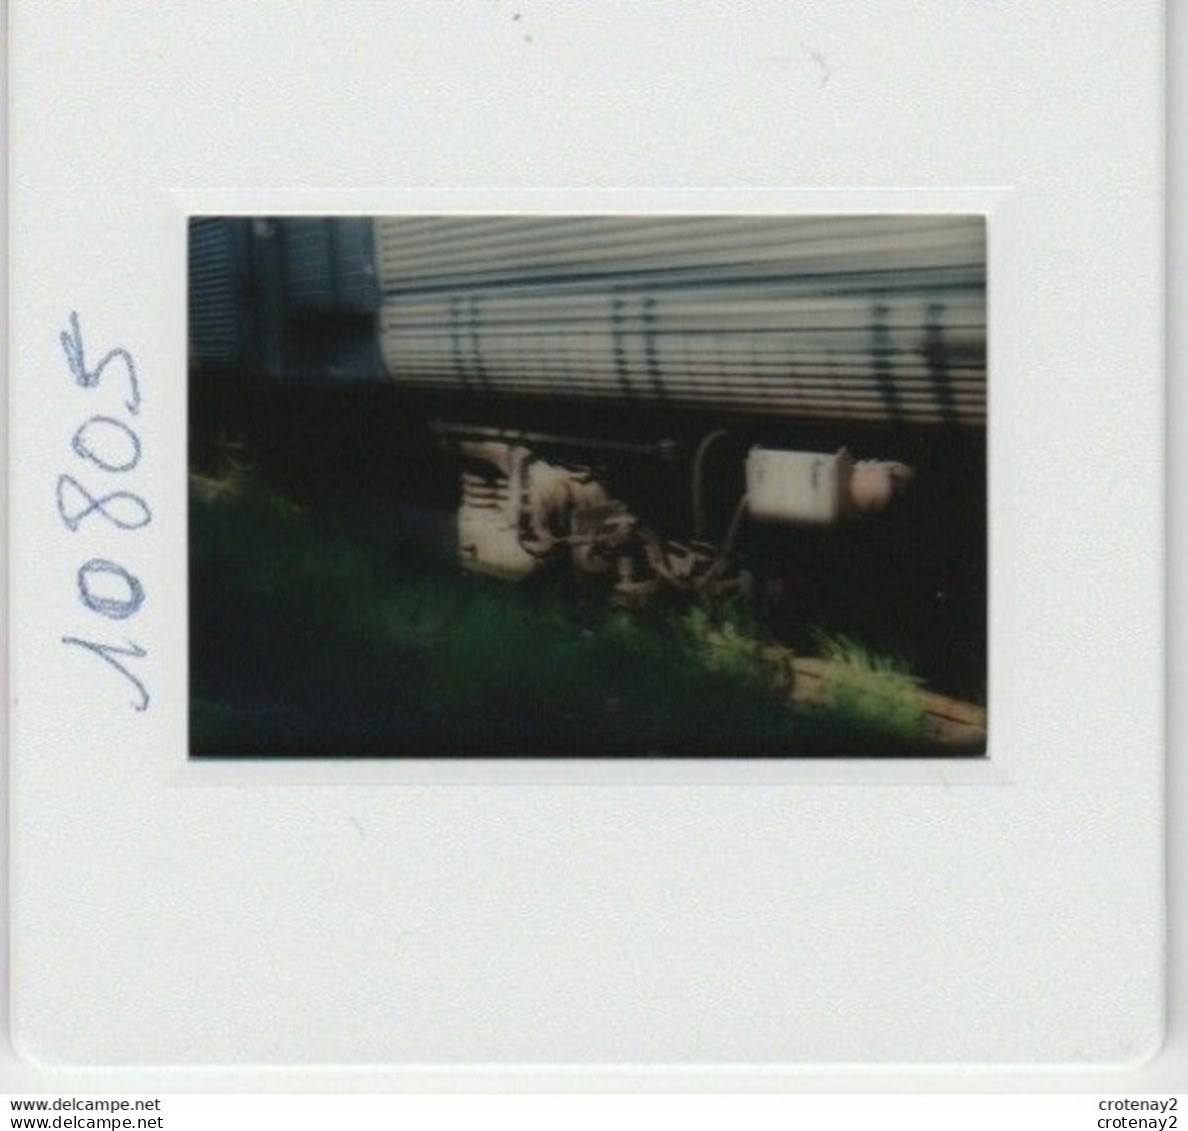 Photo Diapo Diapositive Slide Train De Banlieue SNCF Détail D'un Bogie à ISSY PLAINE Le 19/05/1993 VOIR ZOOM - Diapositives